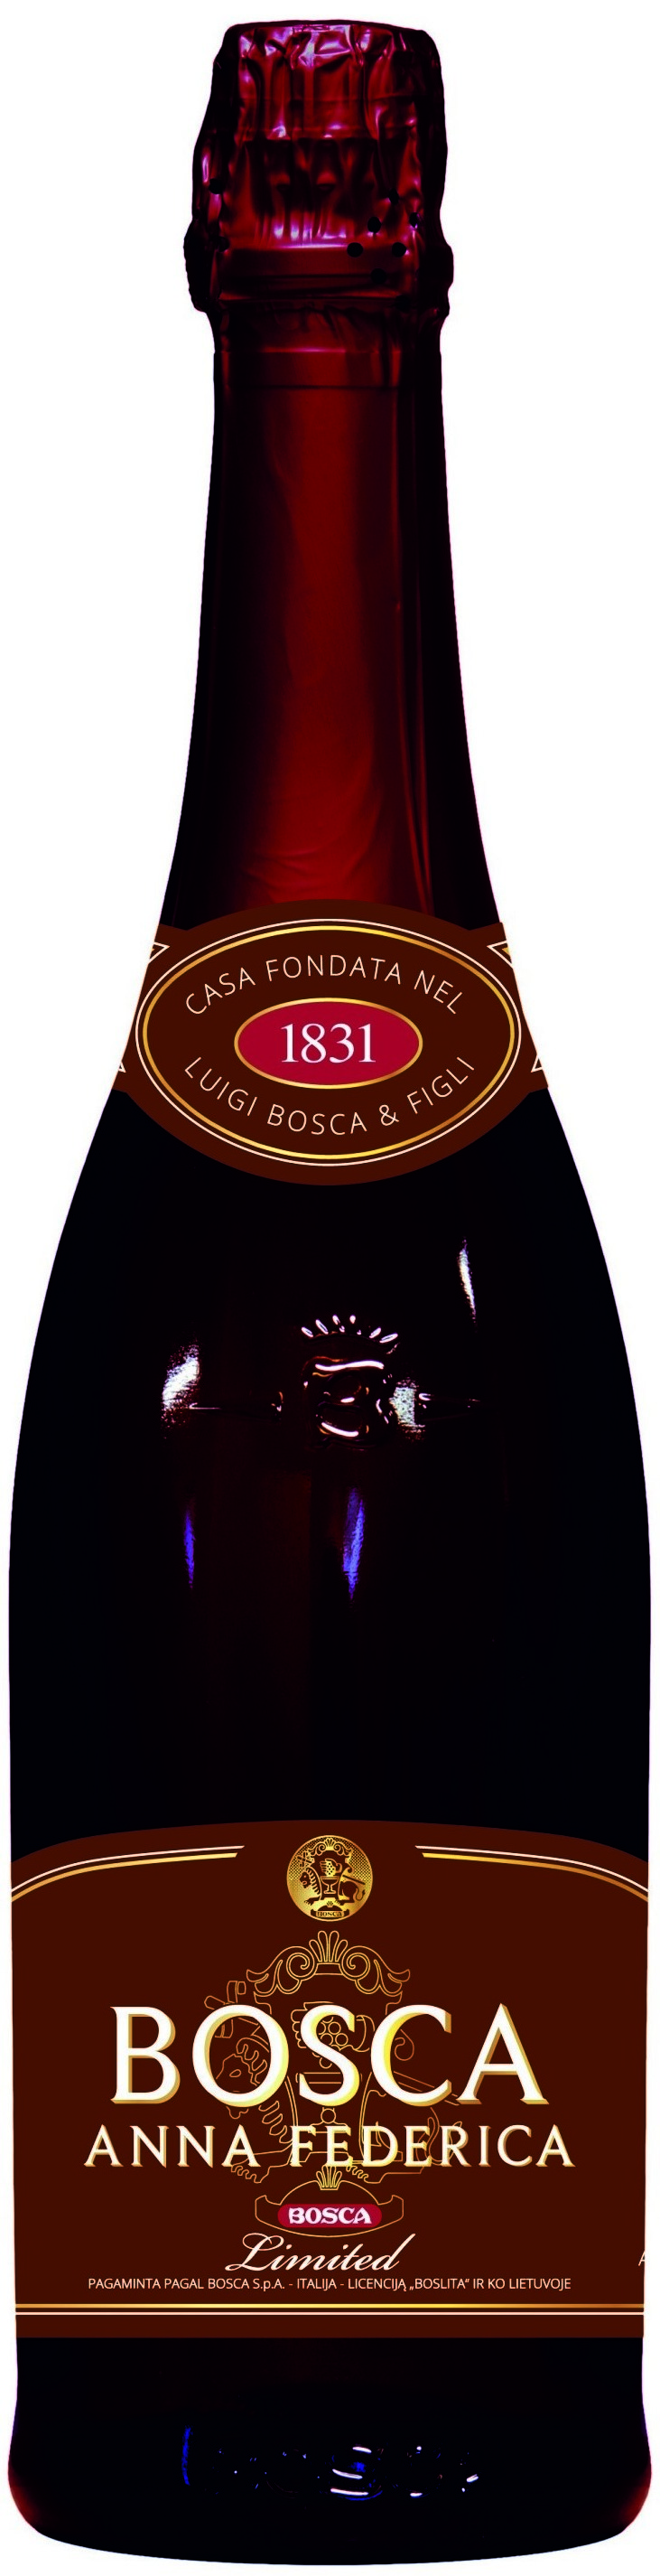 Шампанское боско федерико. Вино Bosca Anna Federica. Игристое вино Fruko Schulz, festa la Vista Rosso 0,75 л. Винный напиток «Bosca Anna Federica Limited».